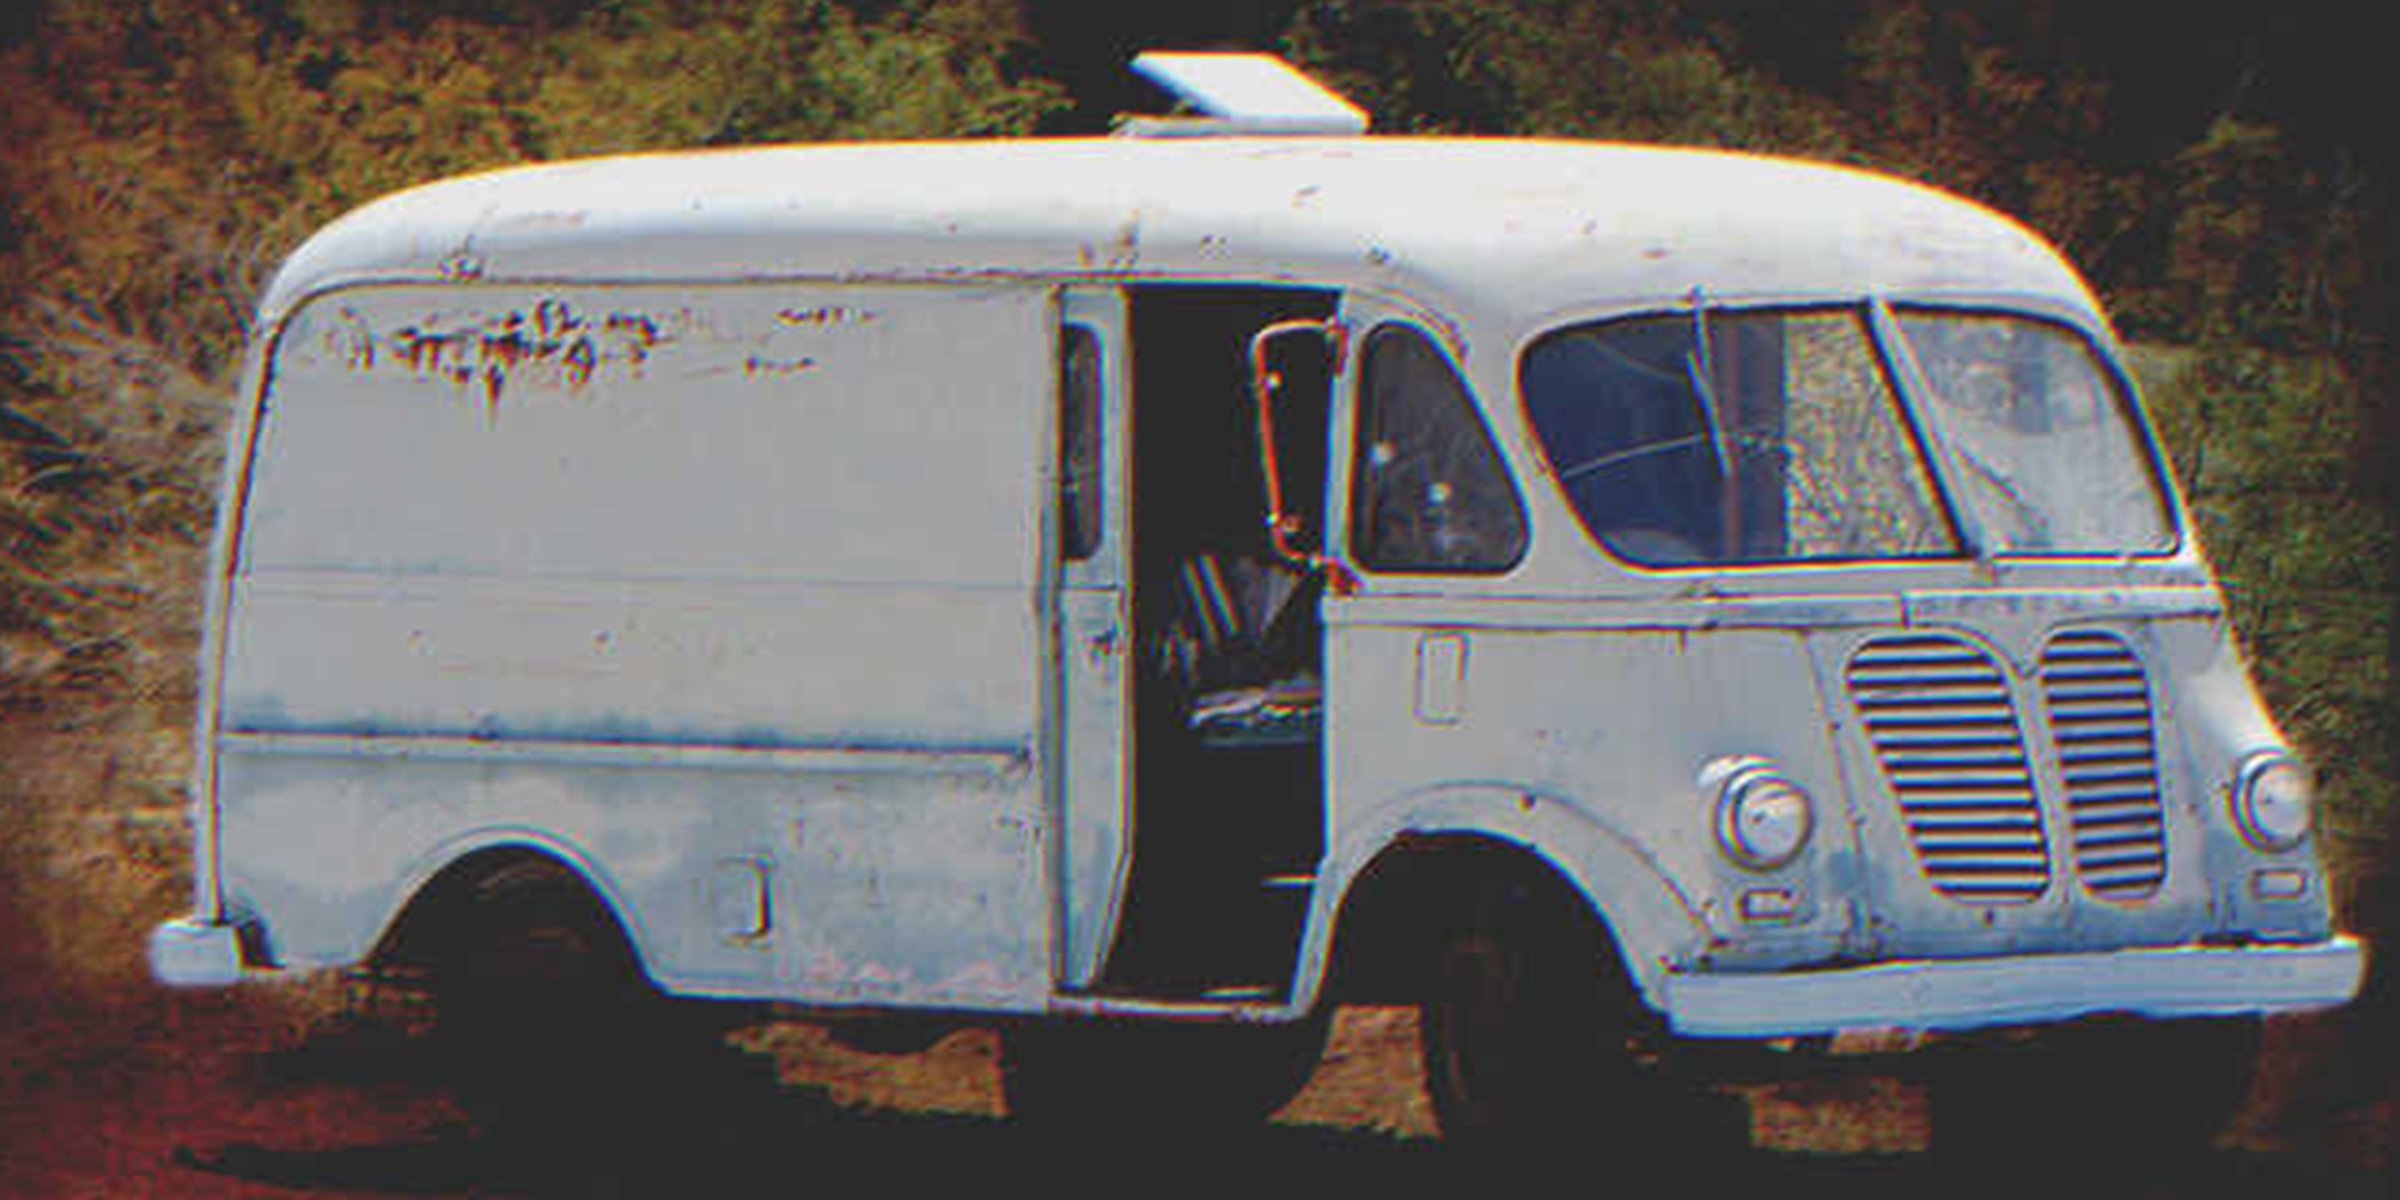 Ein alter Van | Quelle: Shutterstock